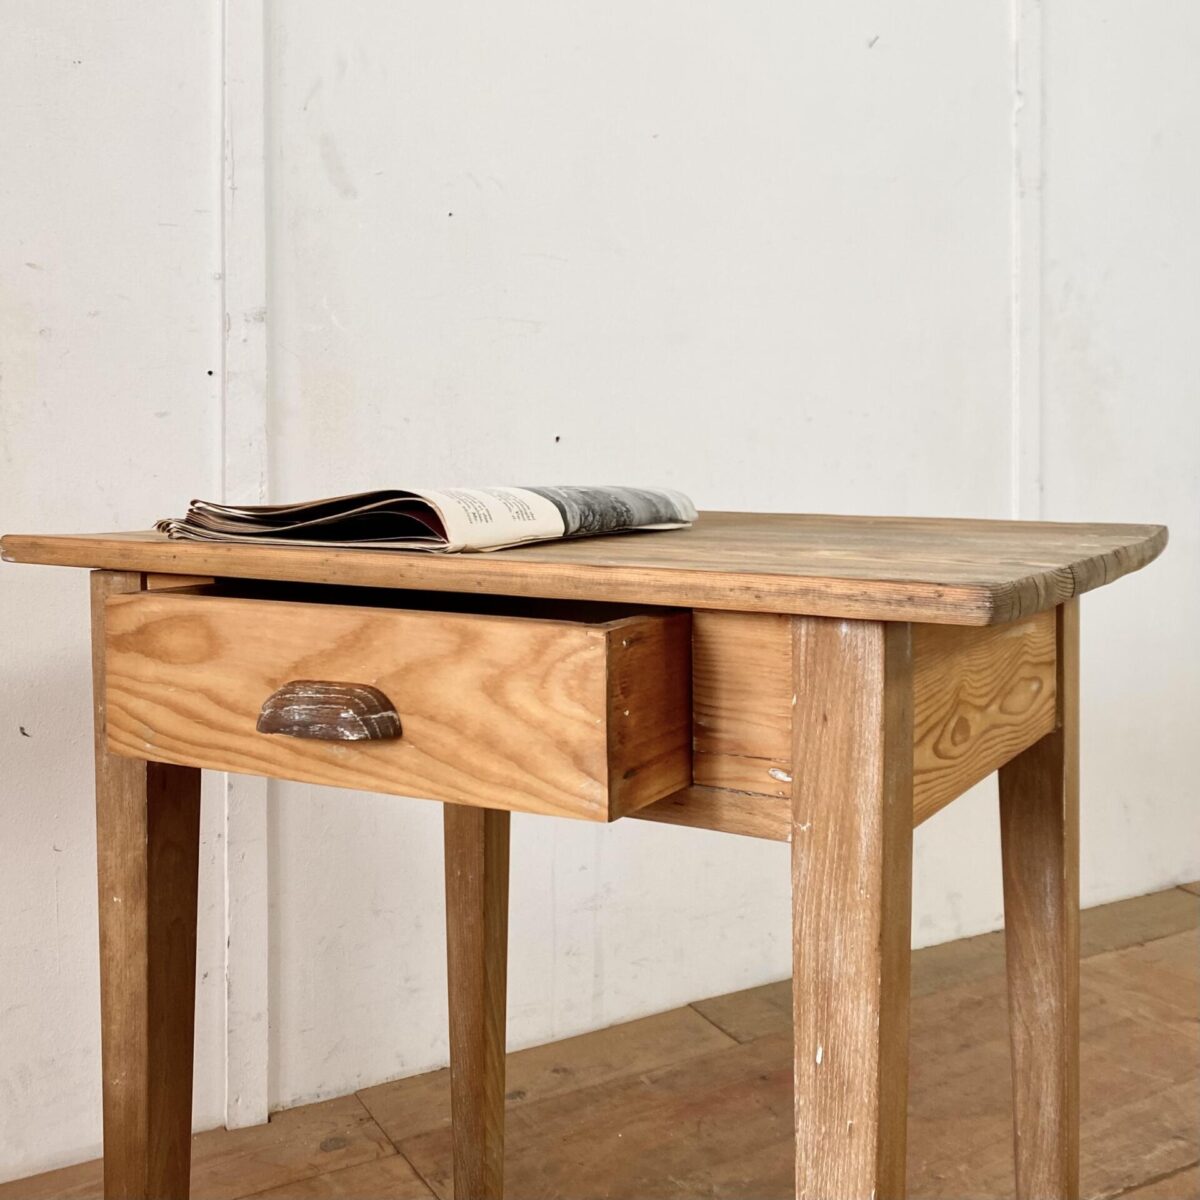 Deuxieme.shop alter Holztisch. Kleiner Biedermeier Schreibtisch mit Schublade. 70x50cm Höhe 73.5cm. Der Tisch ist bisschen verwittert und teilweise kleine Farbrückstände in den Poren. Technisch in stabilem Zustand, die Holz Oberflächen sind geschliffen und mit Naturöl behandelt. Tischblatt und Unterbau Tanne Vollholz, die Tischbeine sind aus Buchenholz. Die Schublade, mit Eichenholzgriff und gezinkten Eckverbindungen, läuft gut. 